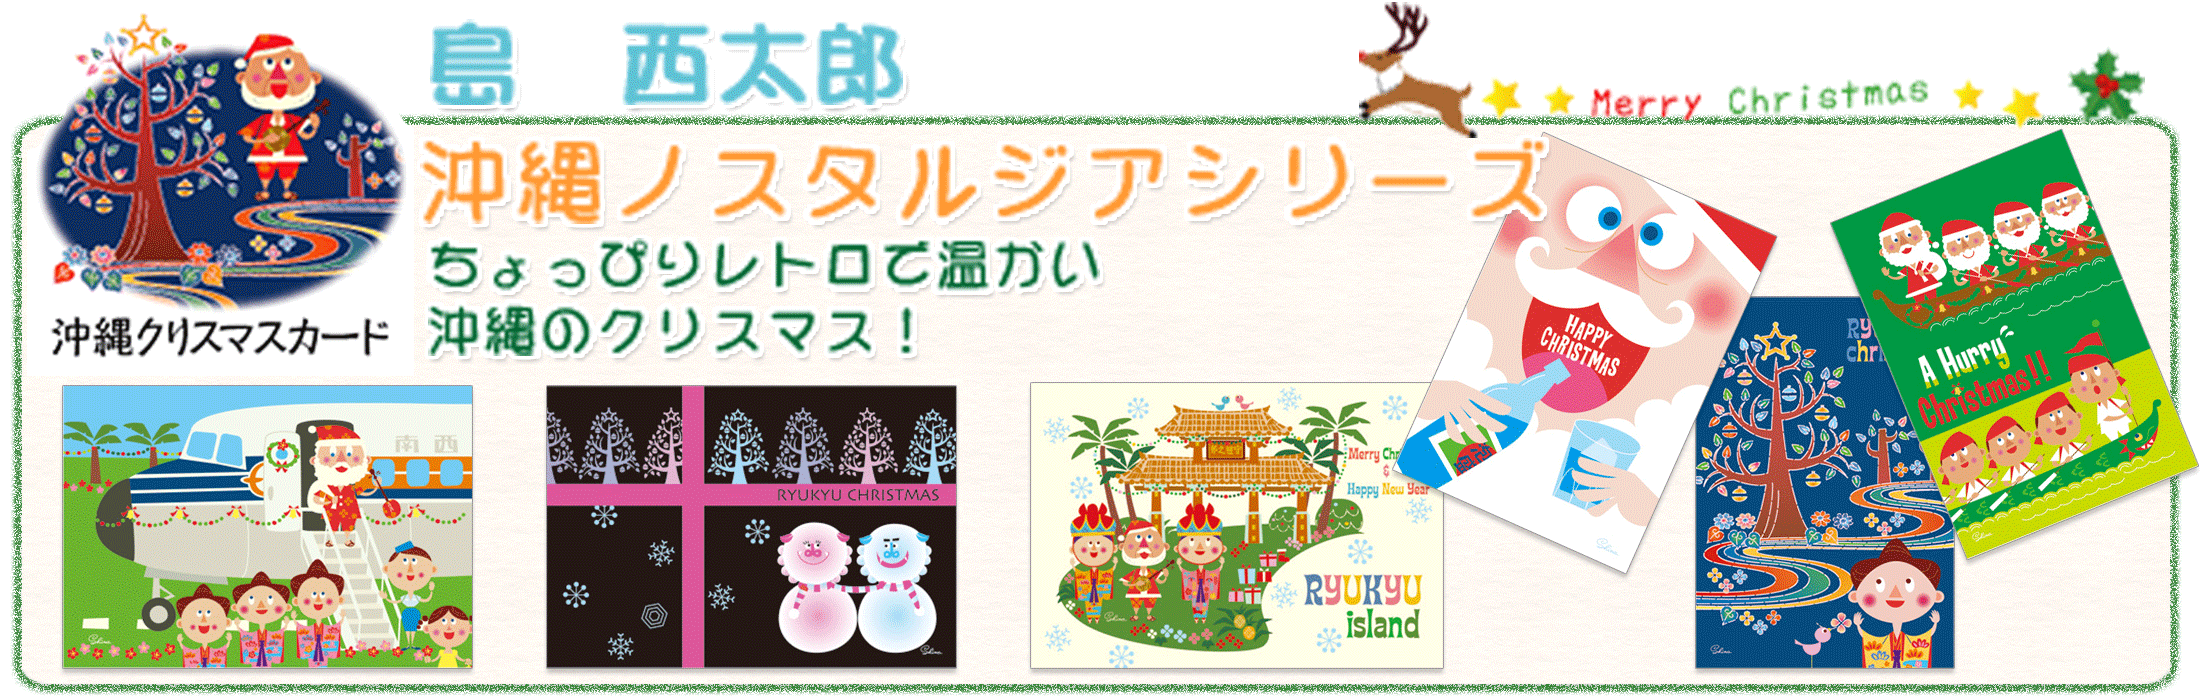 【沖縄クリスマスポストカード】島 西太郎 イラスト クリスマス ポストカード 沖縄 ノスタルジアの販売ページです！